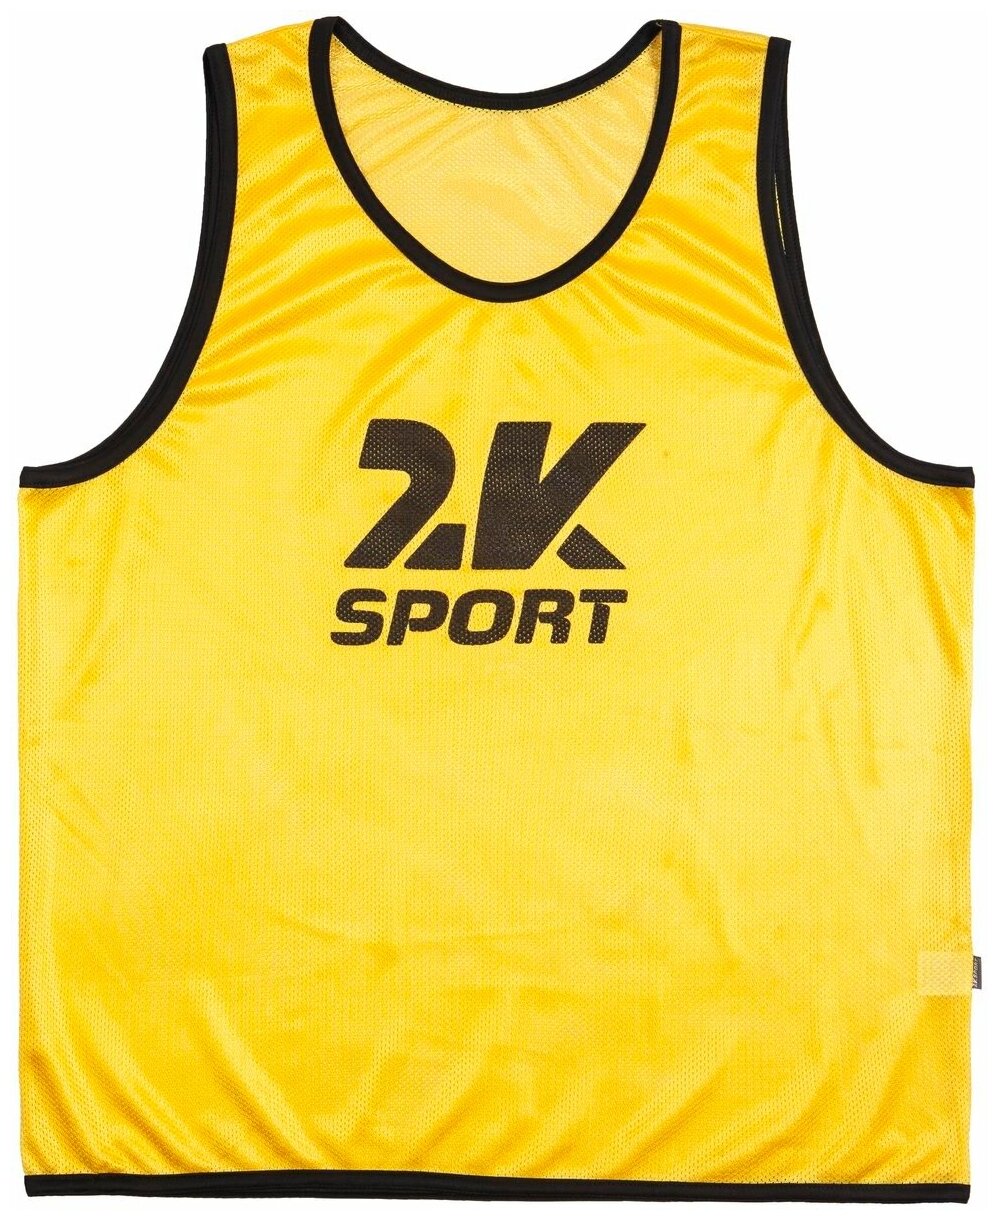 Манишка 2K Sport Team, желтый, medium